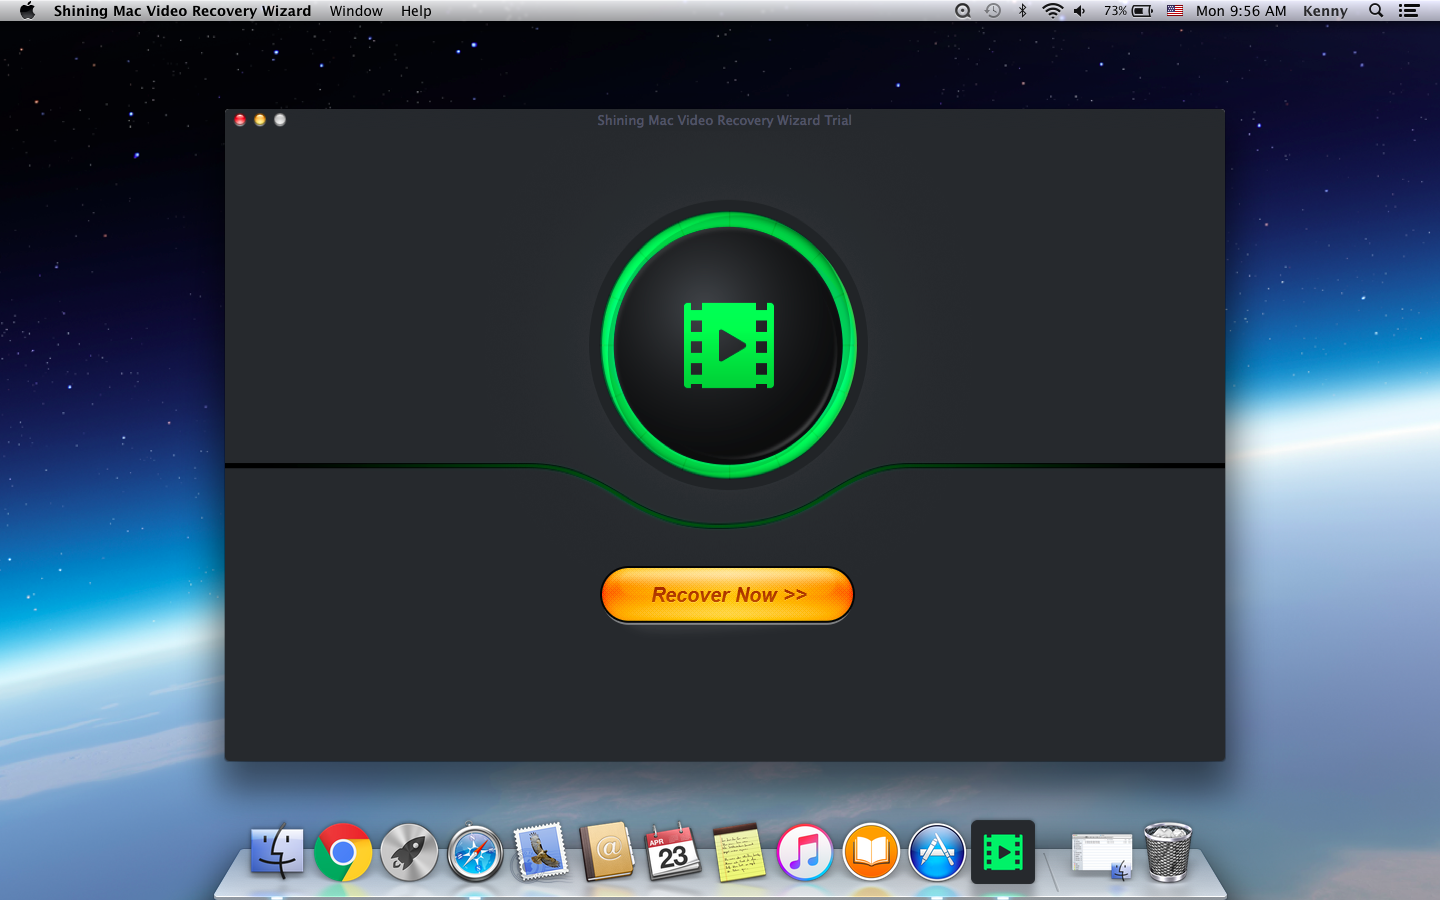 Shining Mac Video Recovery Wizard 6.6.6.6 full